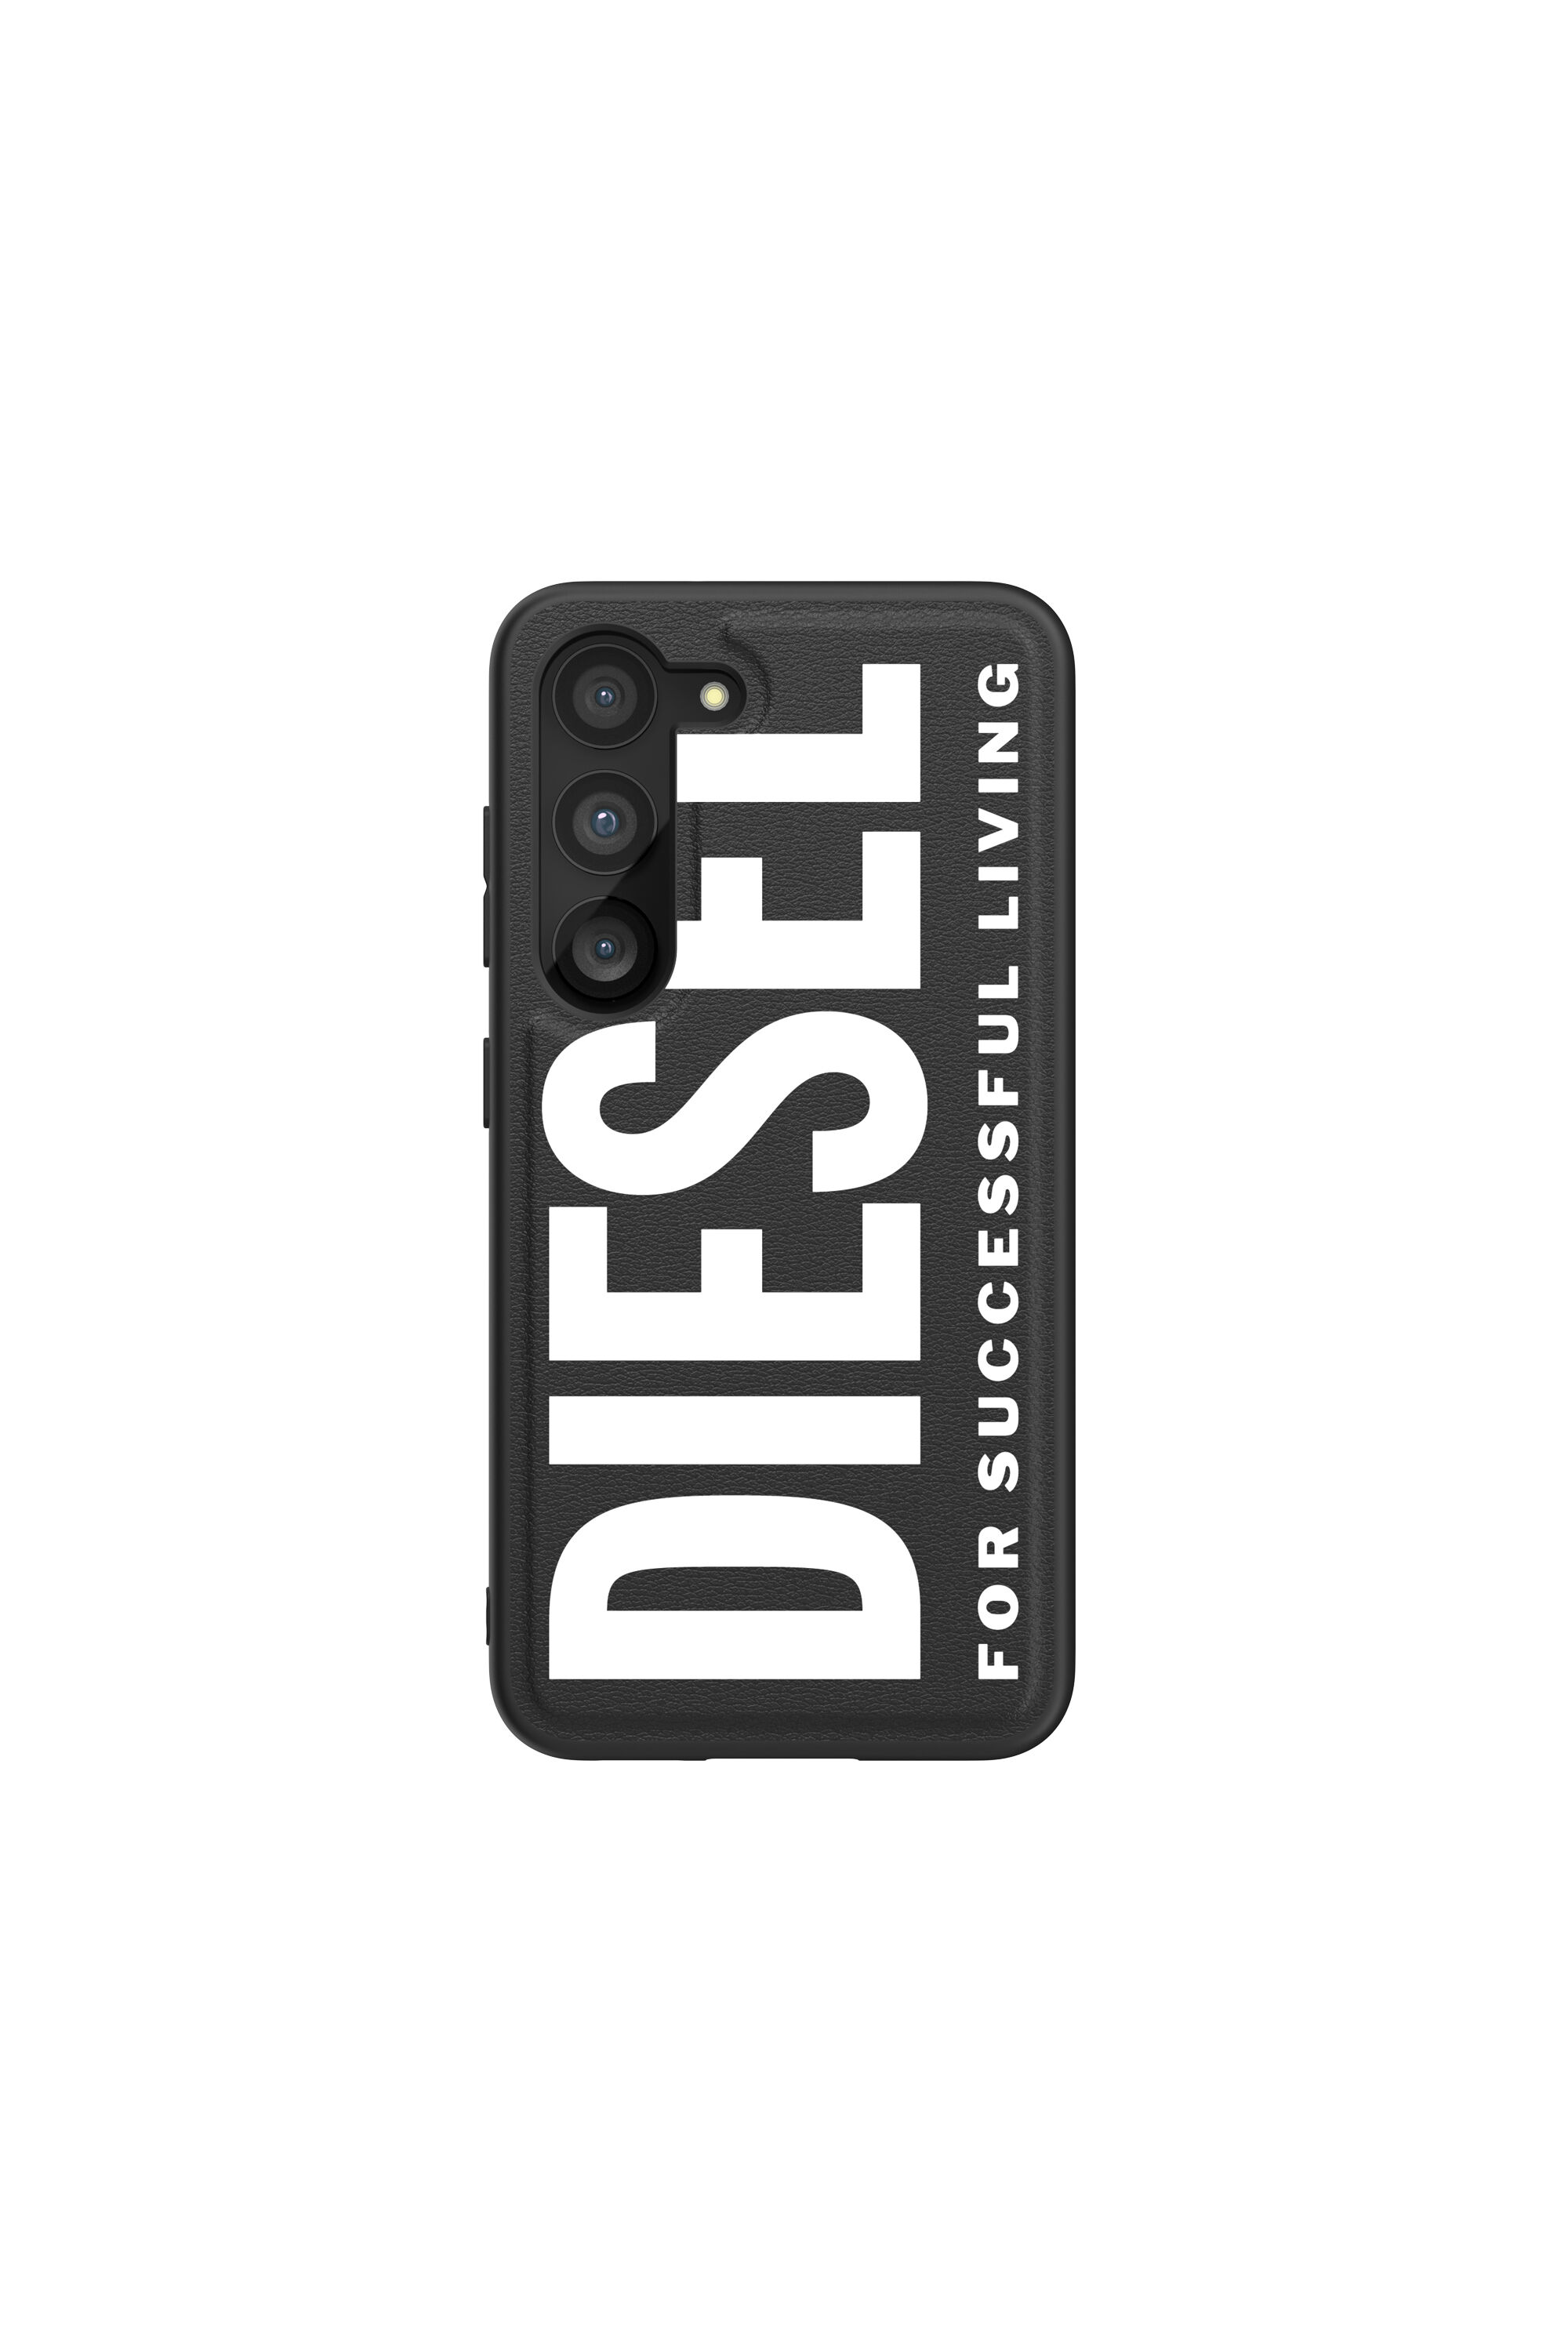 Diesel - 52926 MOULDED CASE, Black/White - Image 2